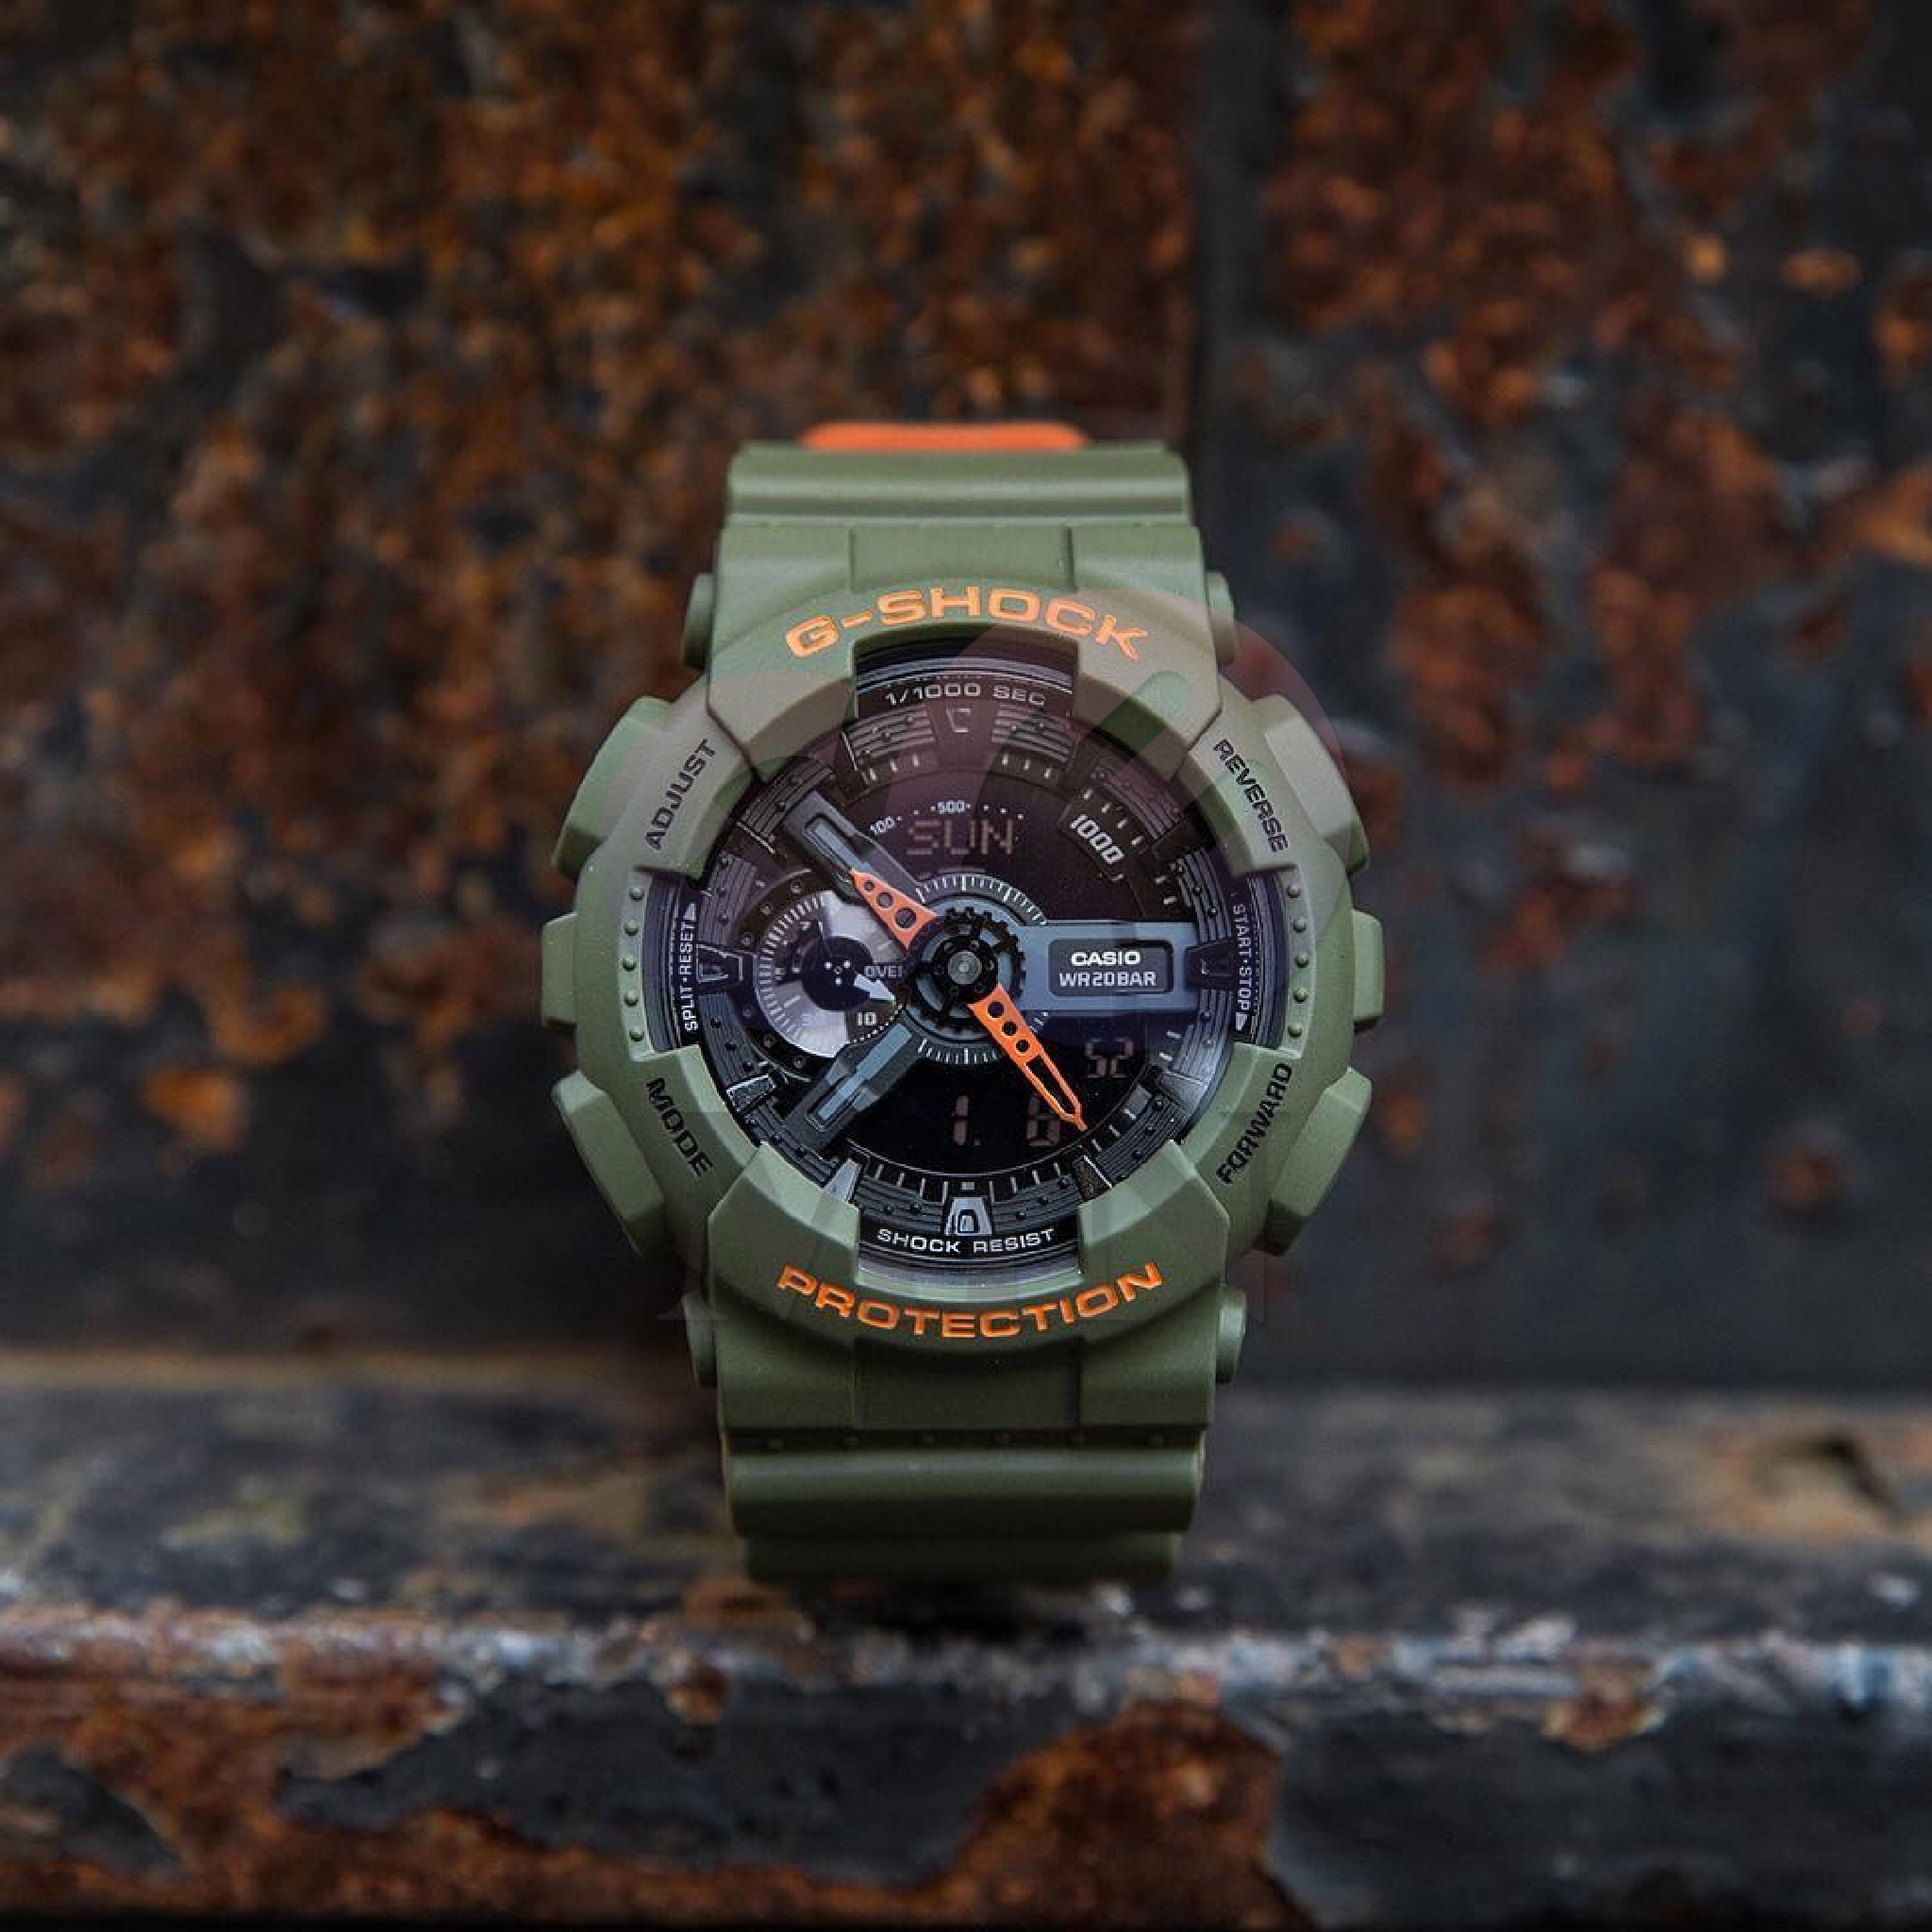 คำอธิบายเพิ่มเติมเกี่ยวกับ นาฬิกาข้อมือผู้ชาย G-SHOCK รุ่น GA-110LN-3A นาฬิกาข้อมือ นาฬิกาผู้ชาย นาฬิกากันน้ำ⌚